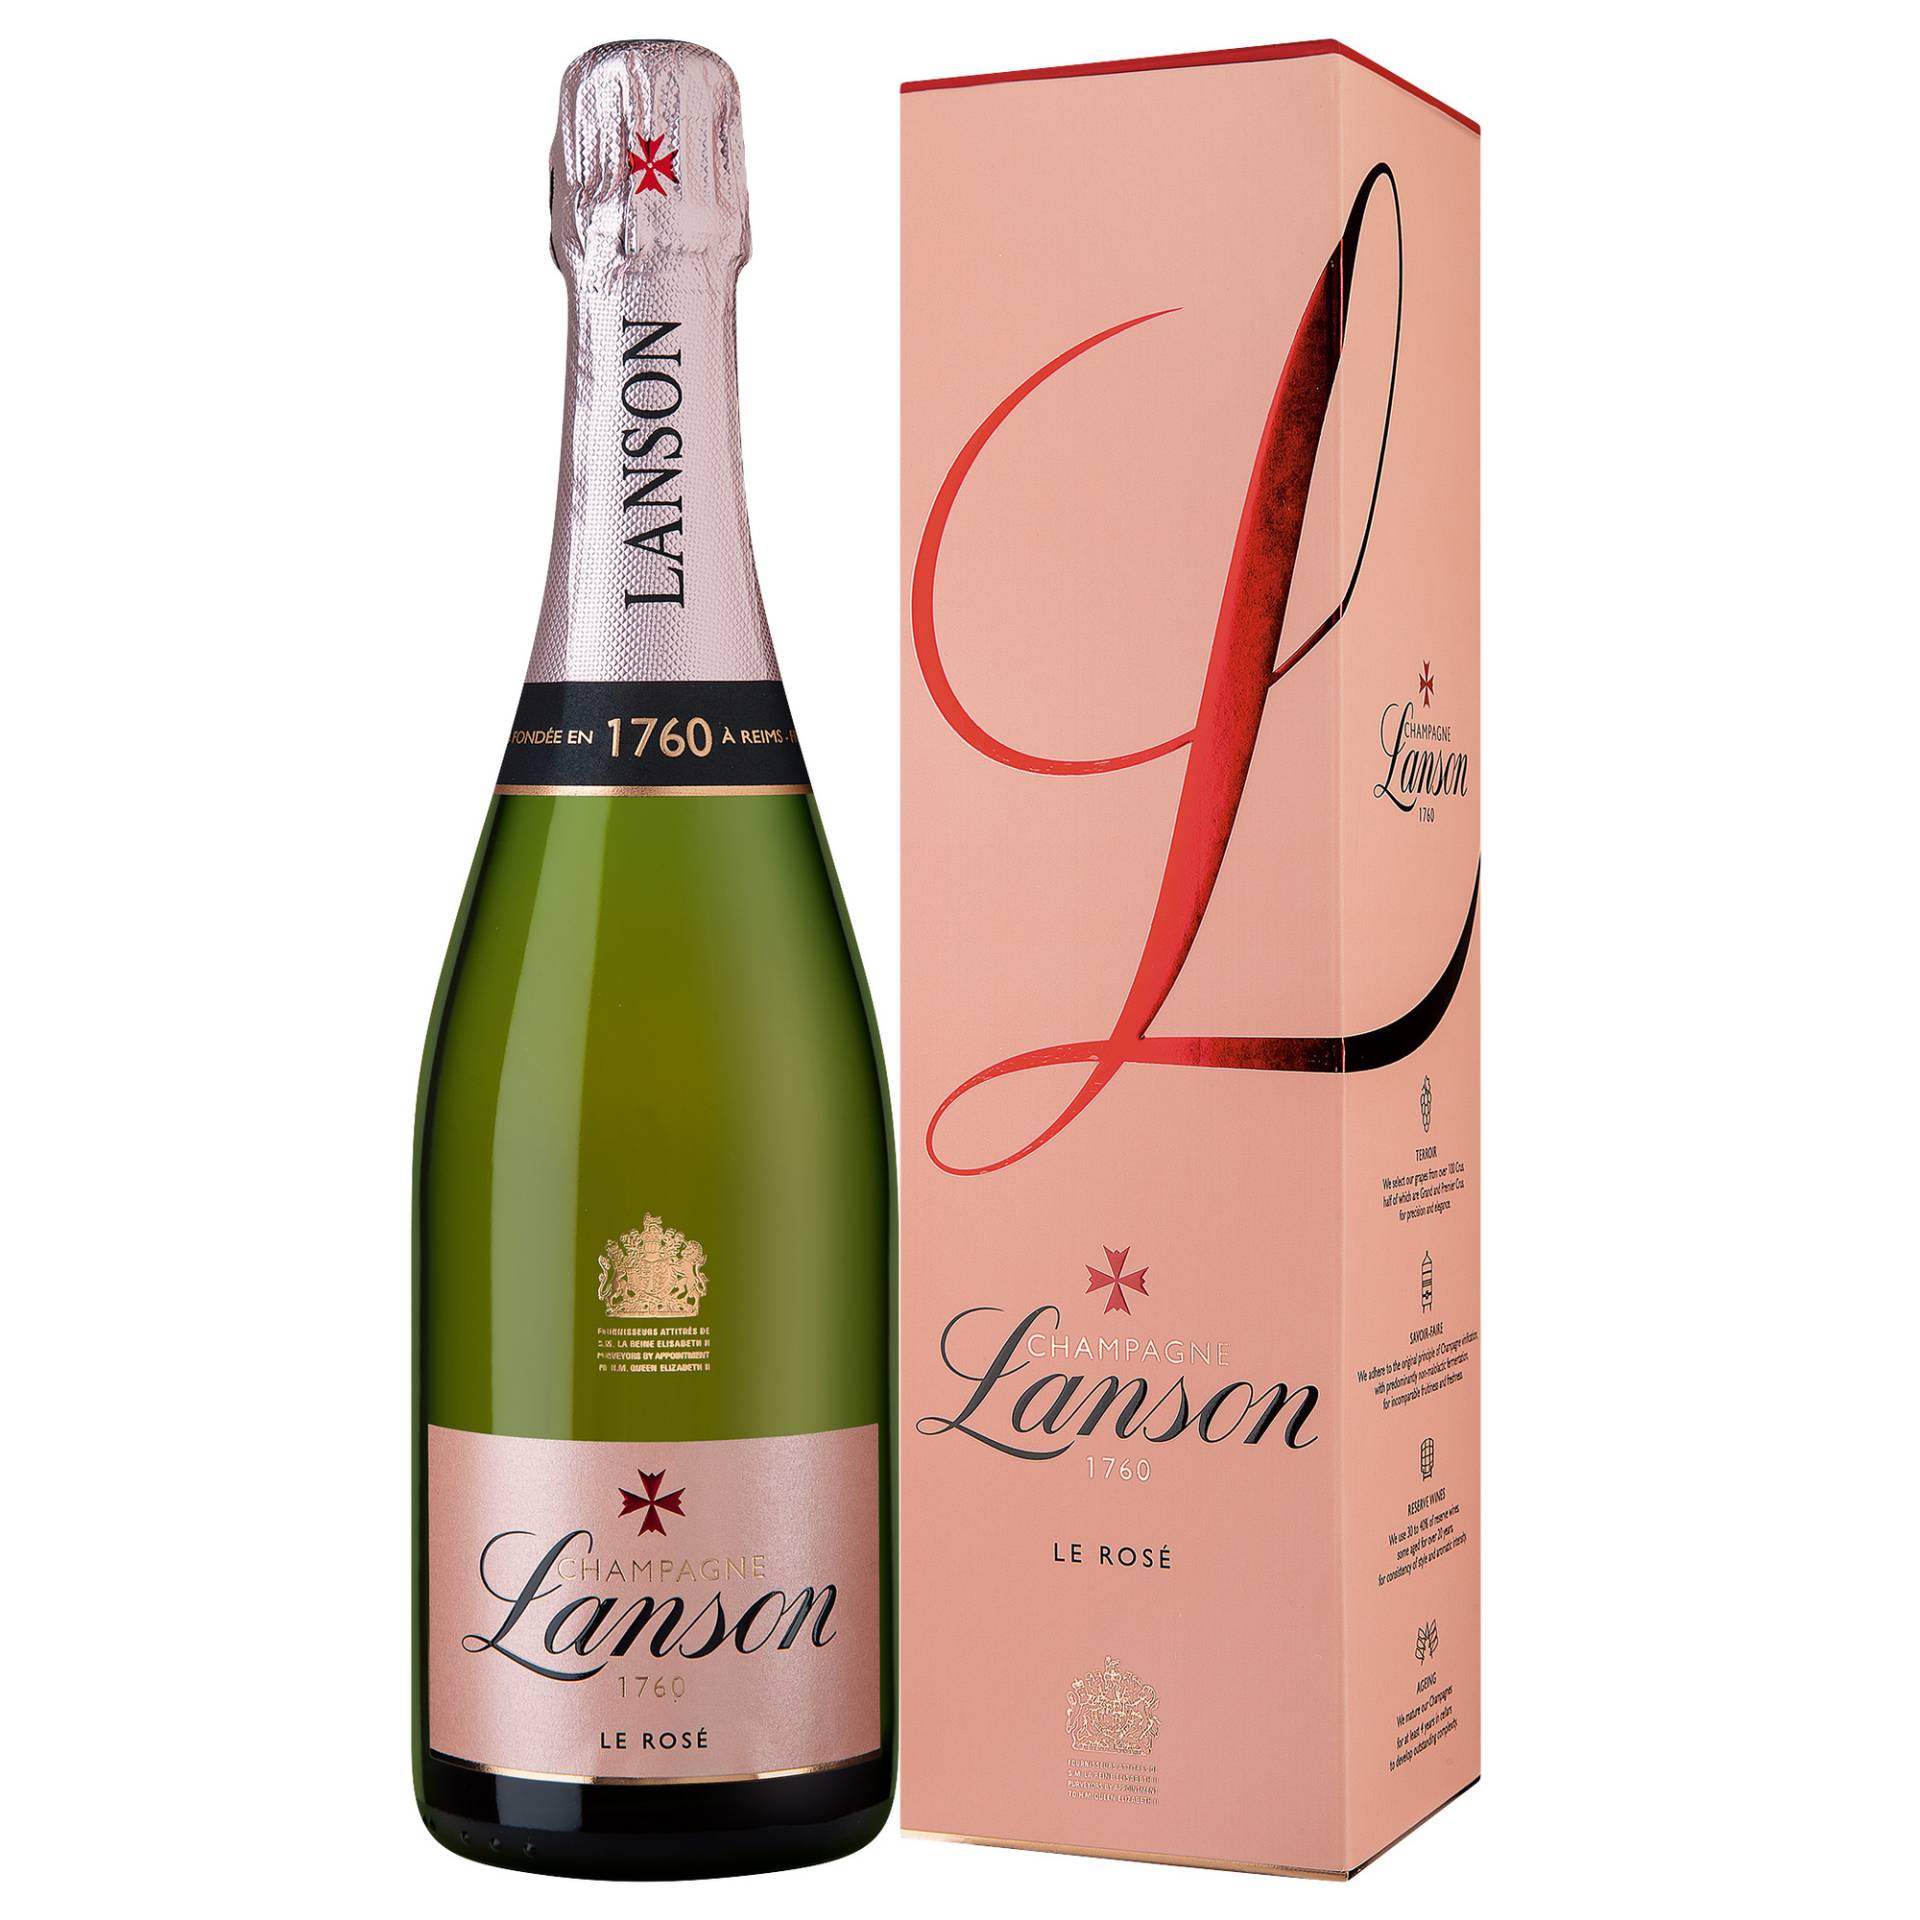 Champagne Lanson Rosé, Brut, Champagne AC, Geschenketui, Champagne, Schaumwein von Lanson International Diffusion, 66 Rue de Courlancy CS20017, 51100 Reims, France